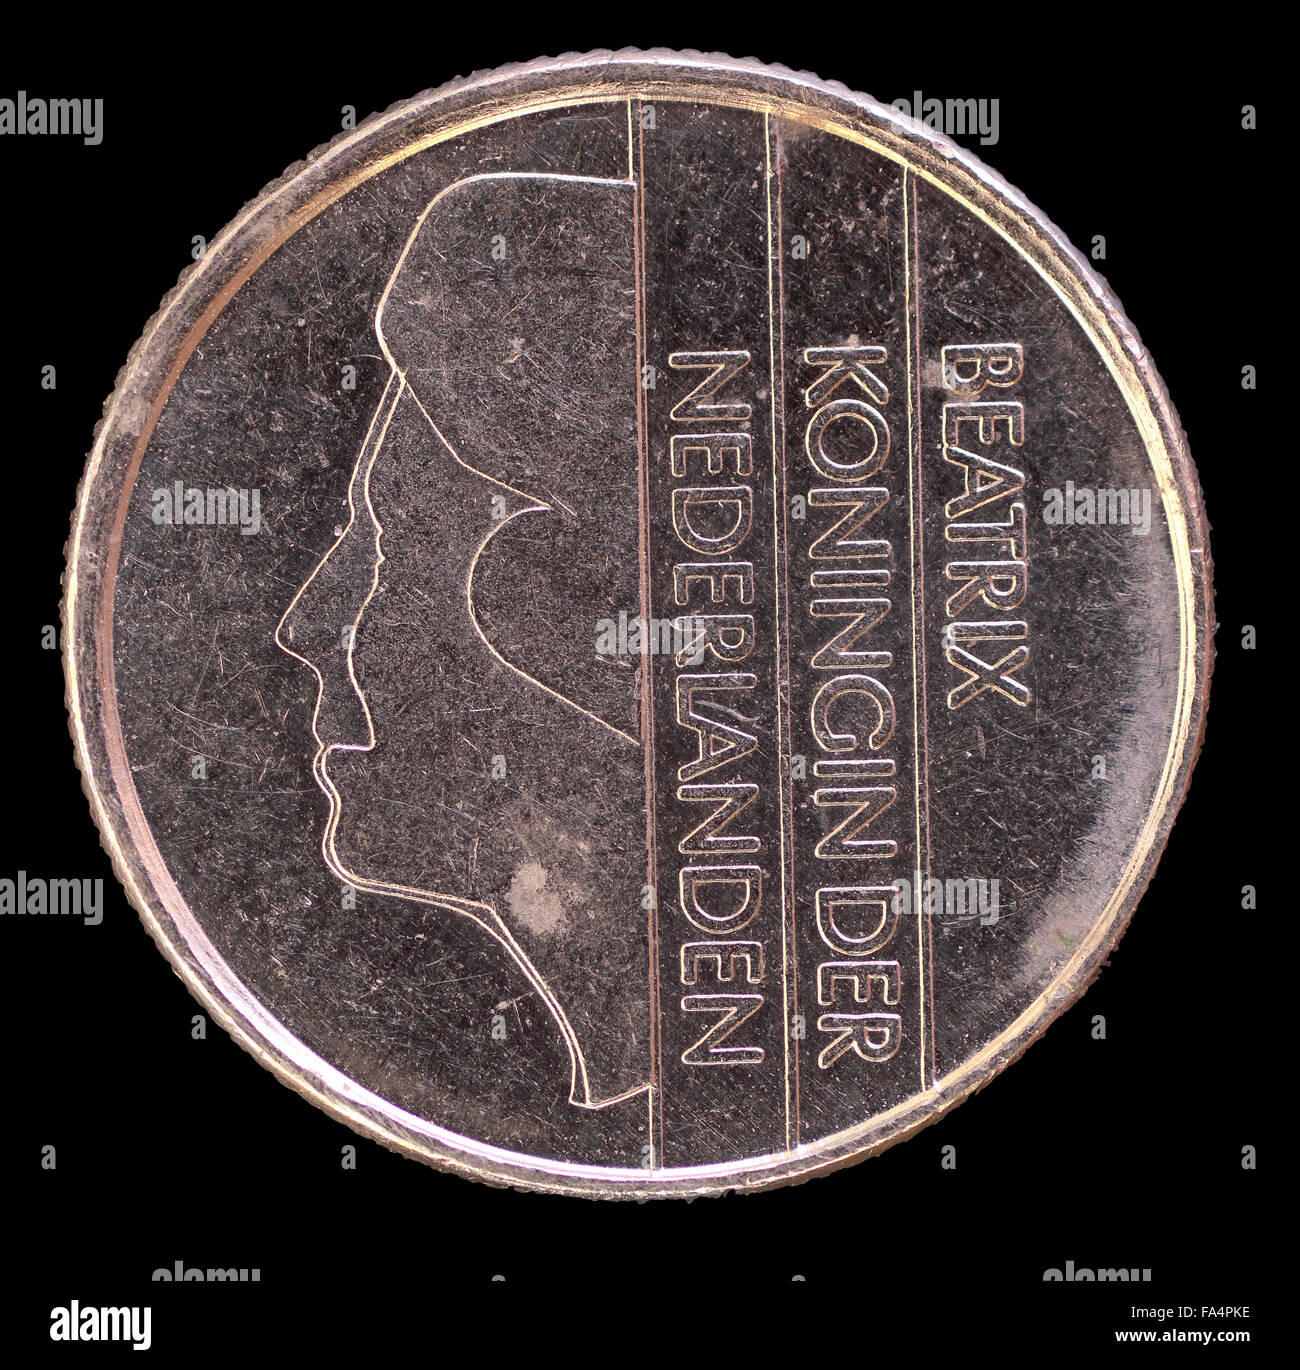 La faccia di testa di 25 CENTESIMI DI FIORINO, di monete emesse dai Paesi Bassi nel 1985, raffigurante il ritratto della Principessa Beatrice. Immagine Foto Stock